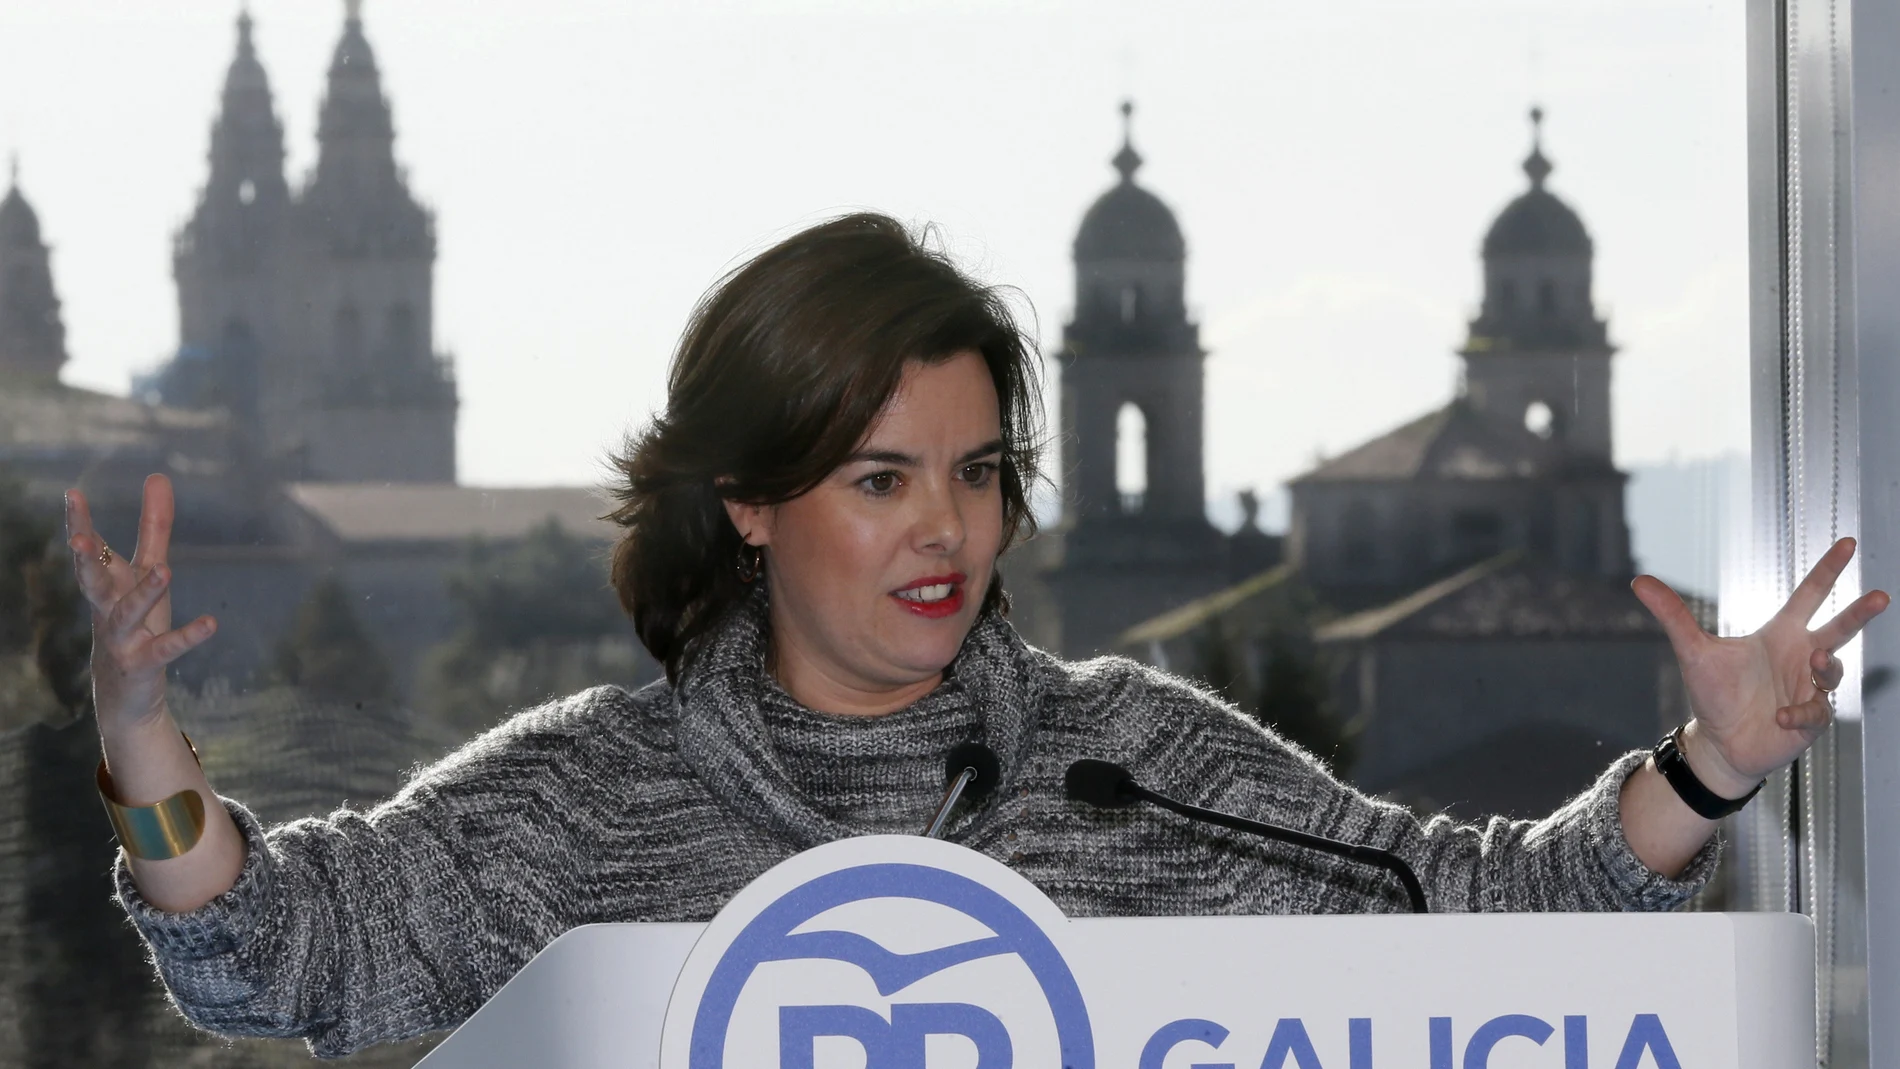  La vicepresidenta del Gobierno, Soraya Sáenz de Santamaría